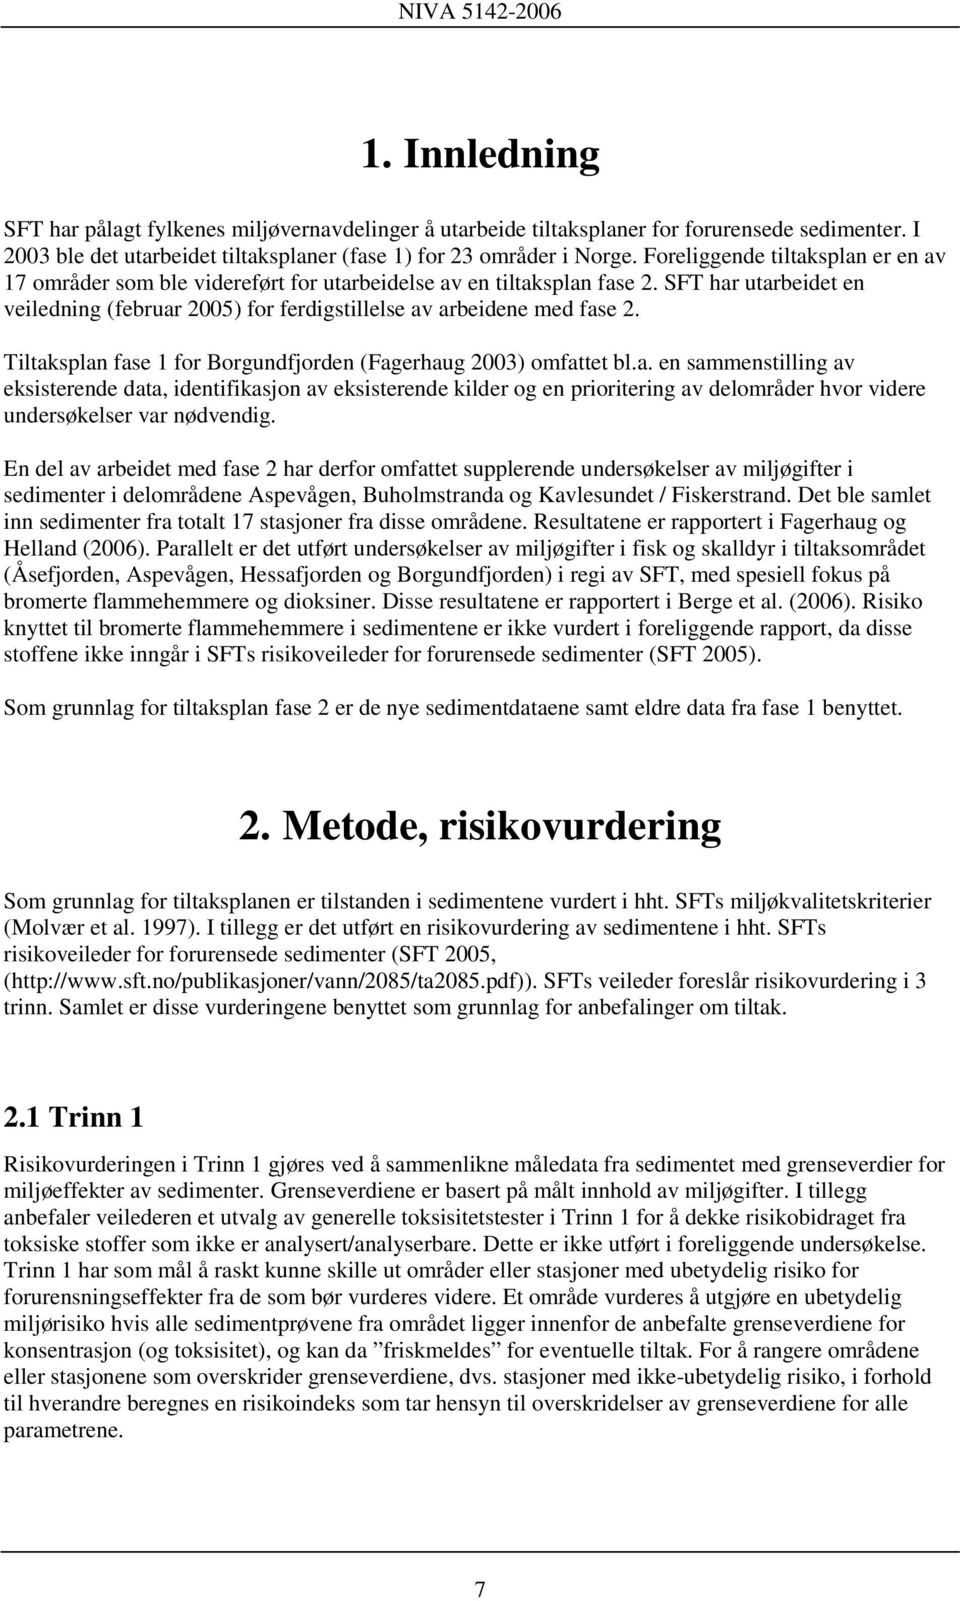 Tiltaksplan fase 1 for Borgundfjorden (Fagerhaug 2003) omfattet bl.a. en sammenstilling av eksisterende data, identifikasjon av eksisterende kilder og en prioritering av delområder hvor videre undersøkelser var nødvendig.